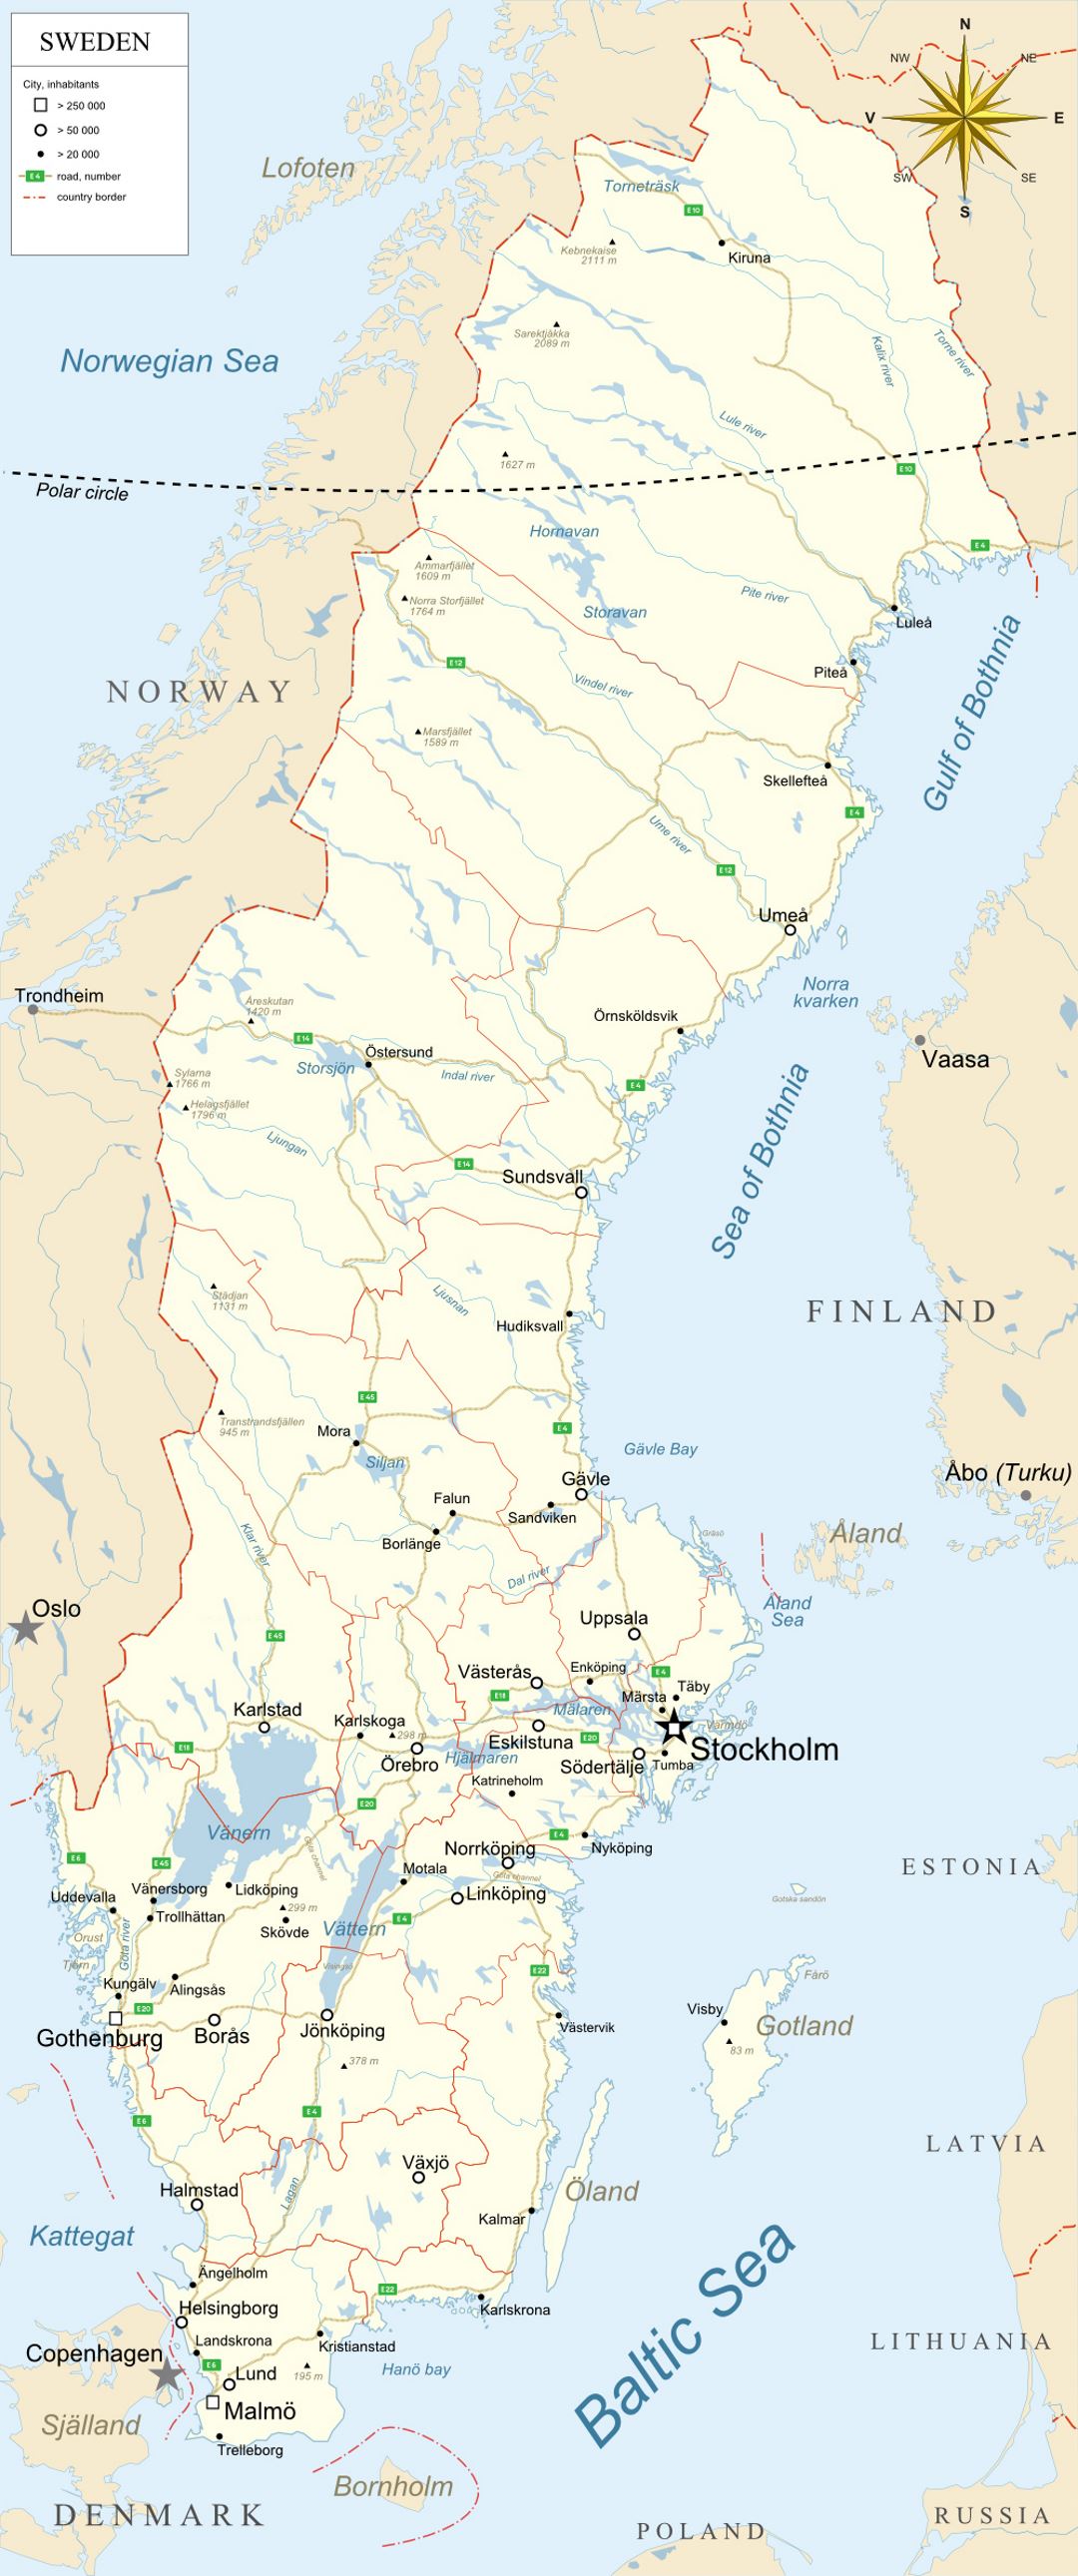 Grande mapa de Suecia con administrativas divisiones, carreteras y grandes ciudades